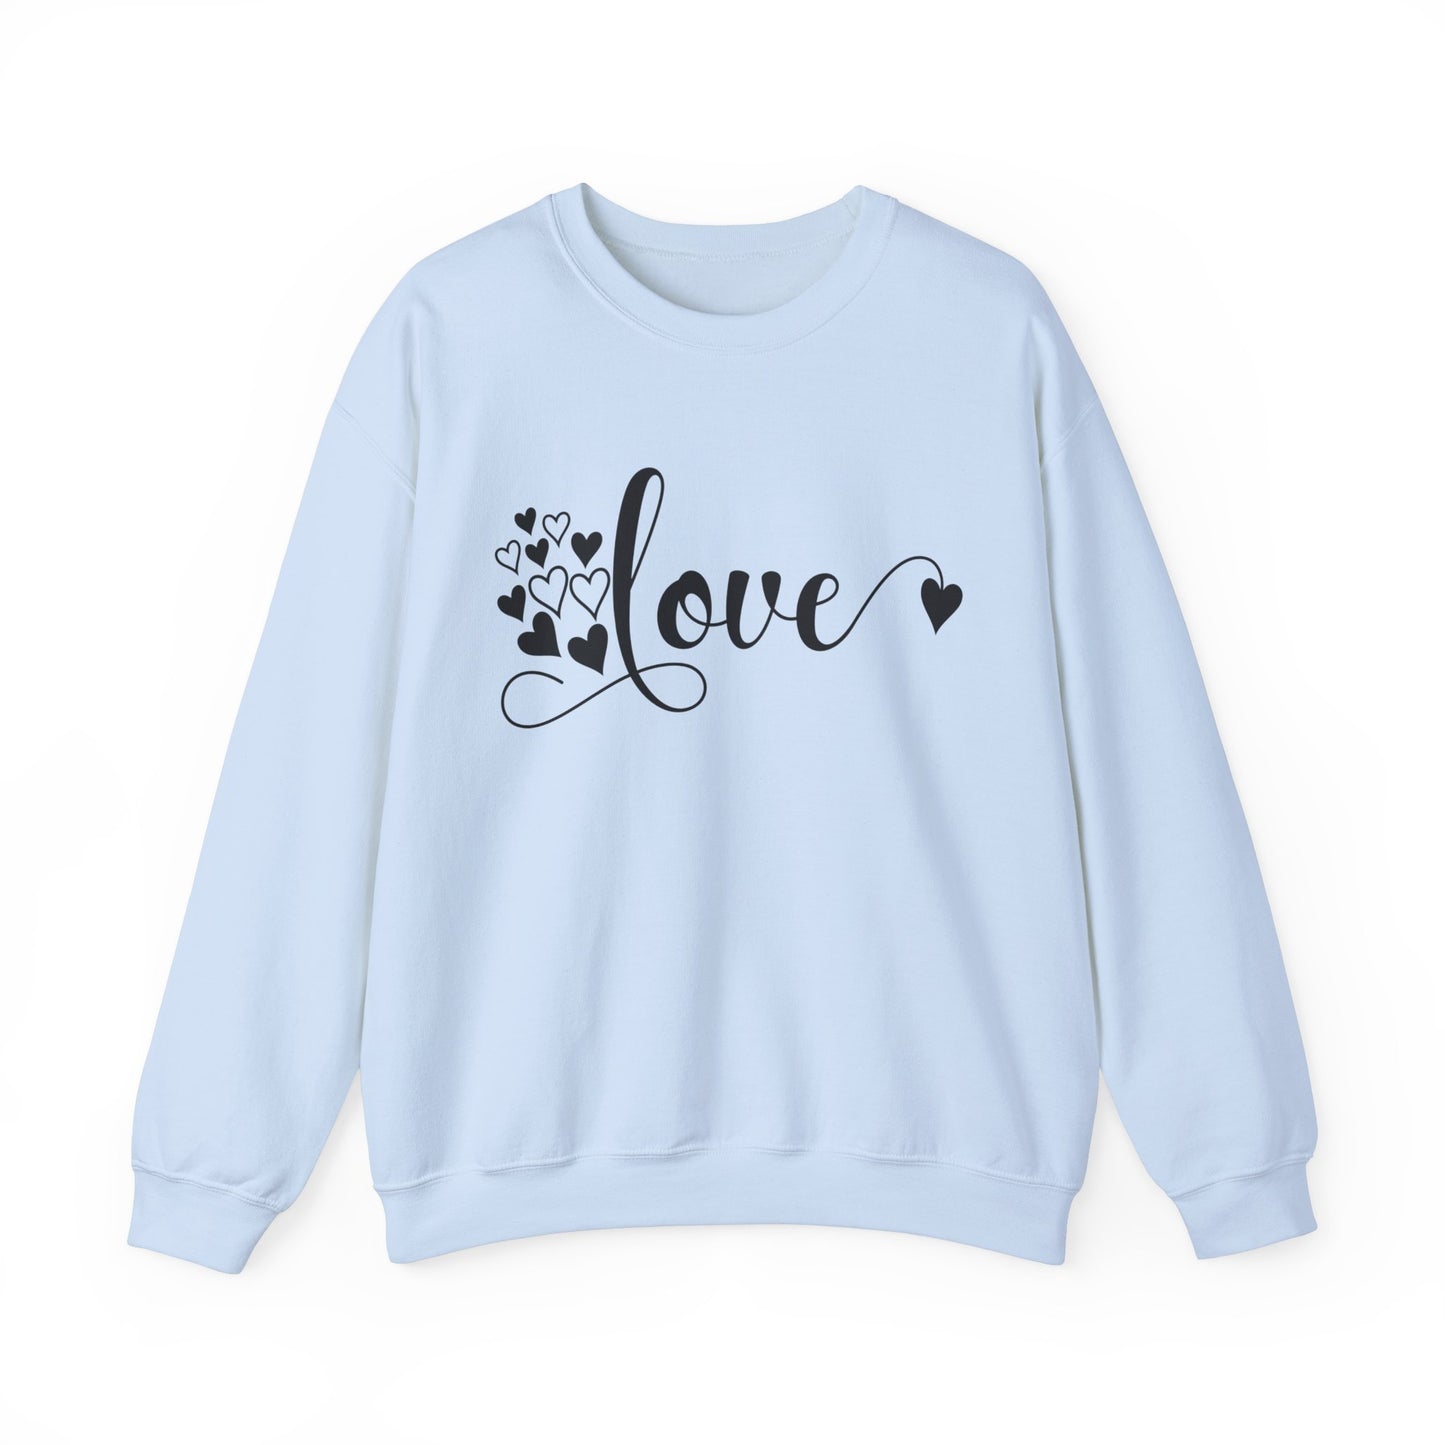 LOVE Women's Sweatshirt